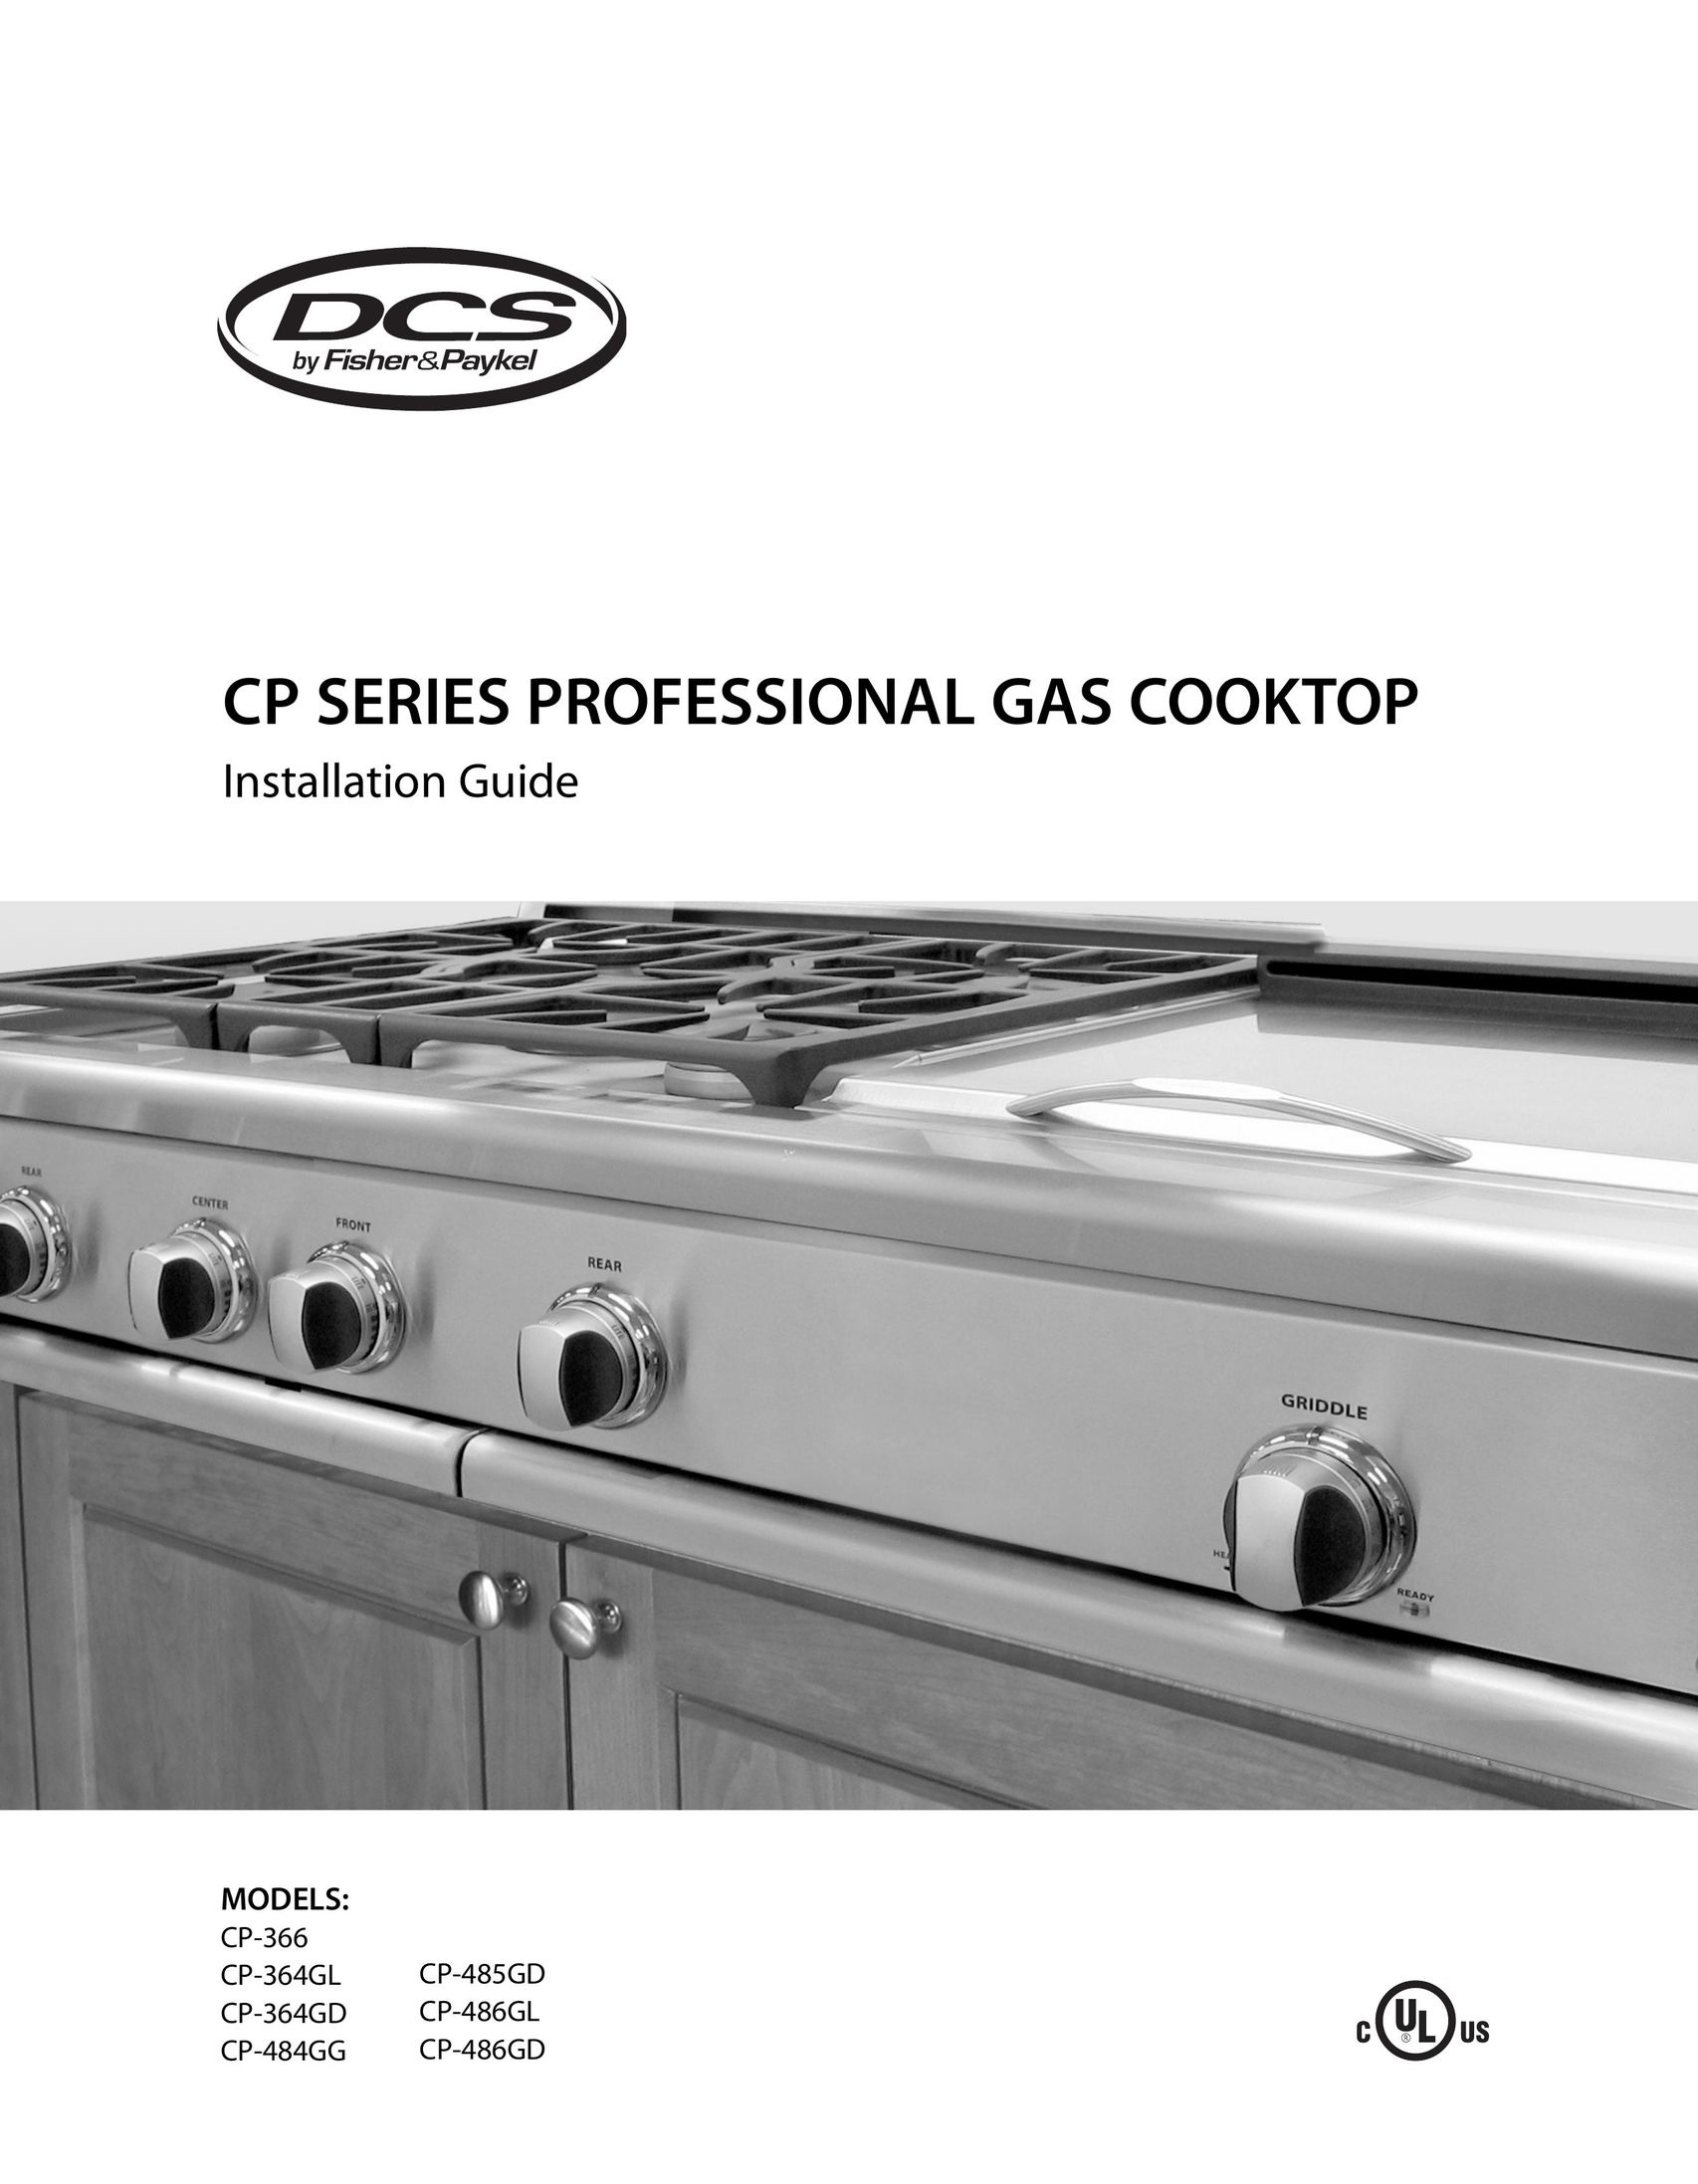 DCS CP-486GD Cooktop User Manual